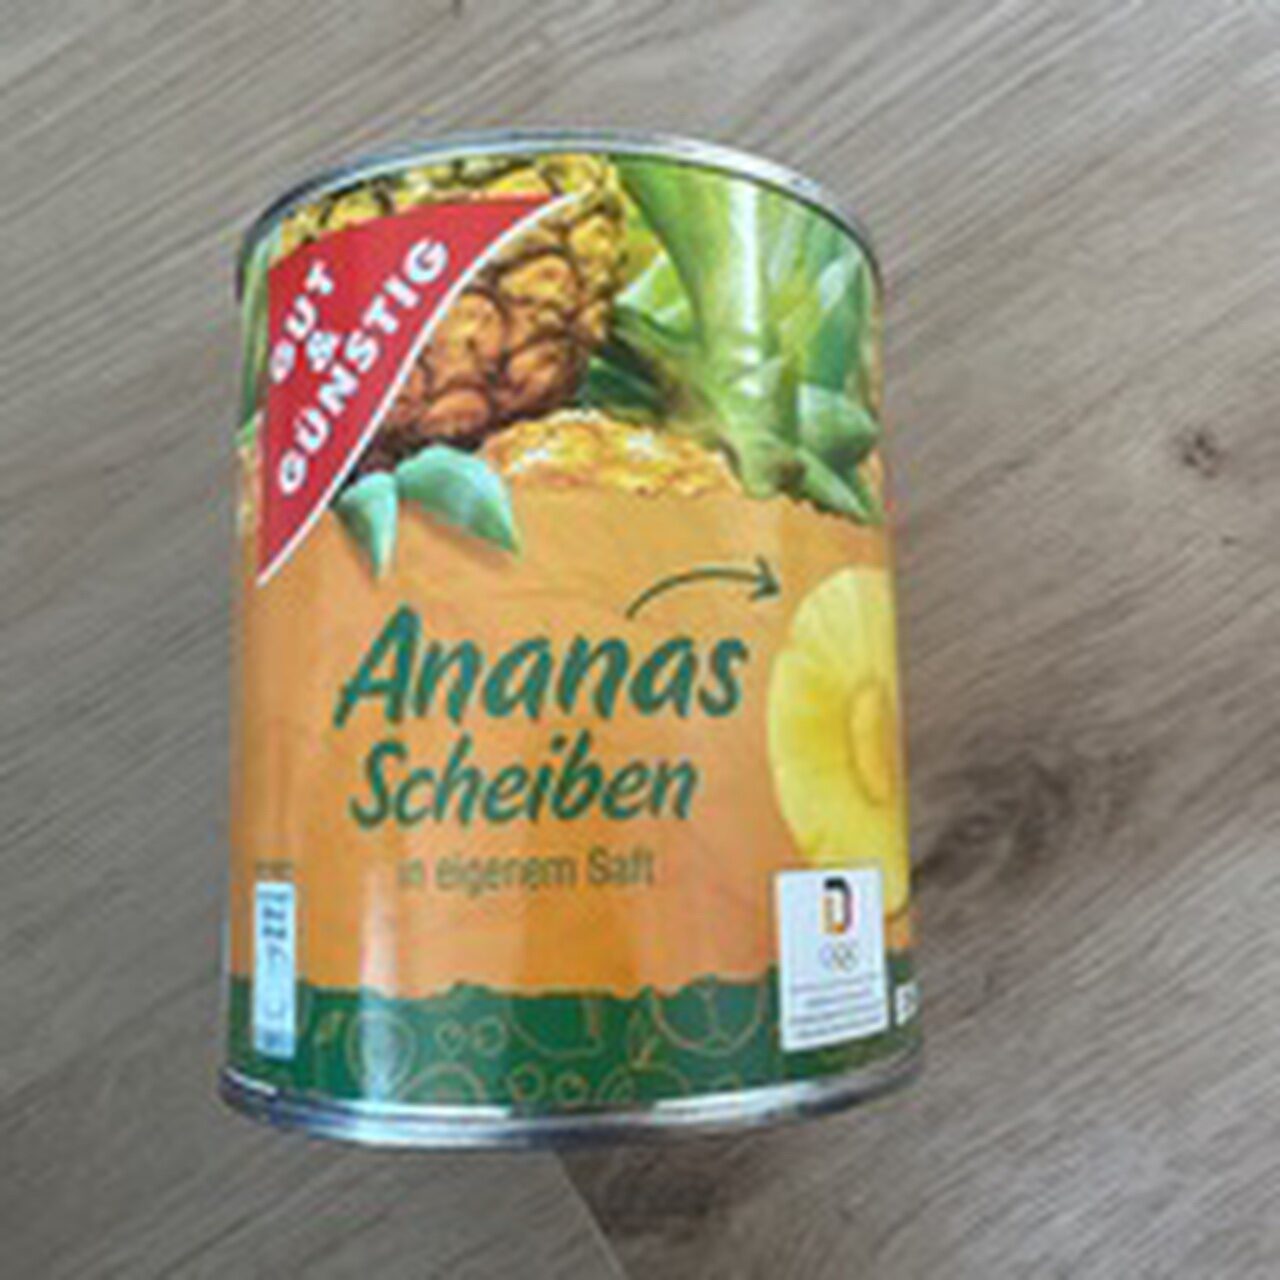 Ananas Scheiben - Product - de